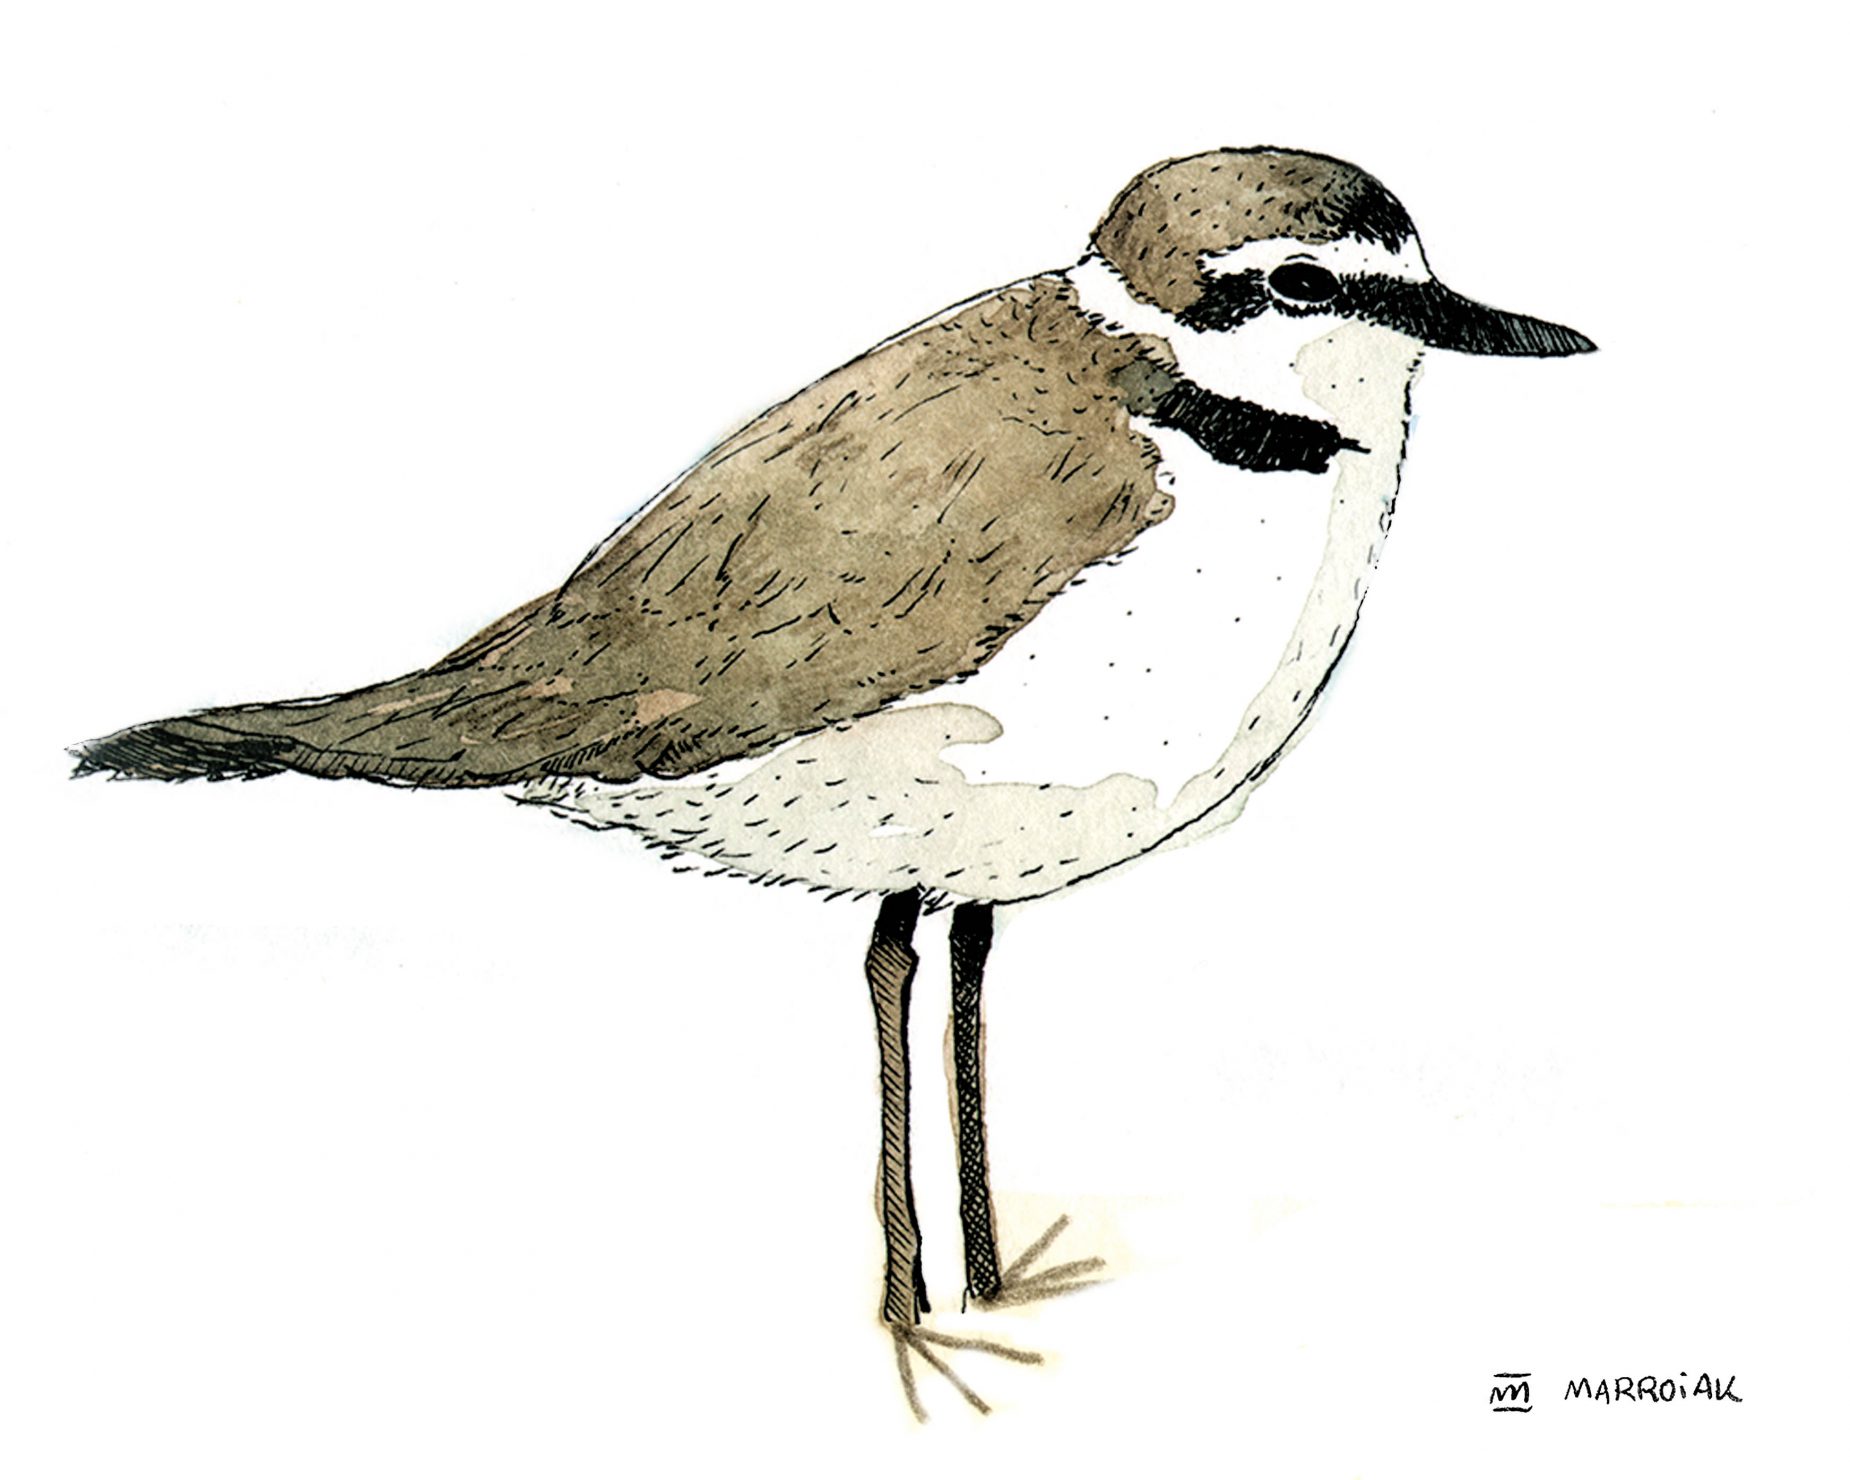 Dibujo en acuareladel corriol camanegre (chorlitejo patinegro - Charadrius alexandrinus). Ilustración de pájaros